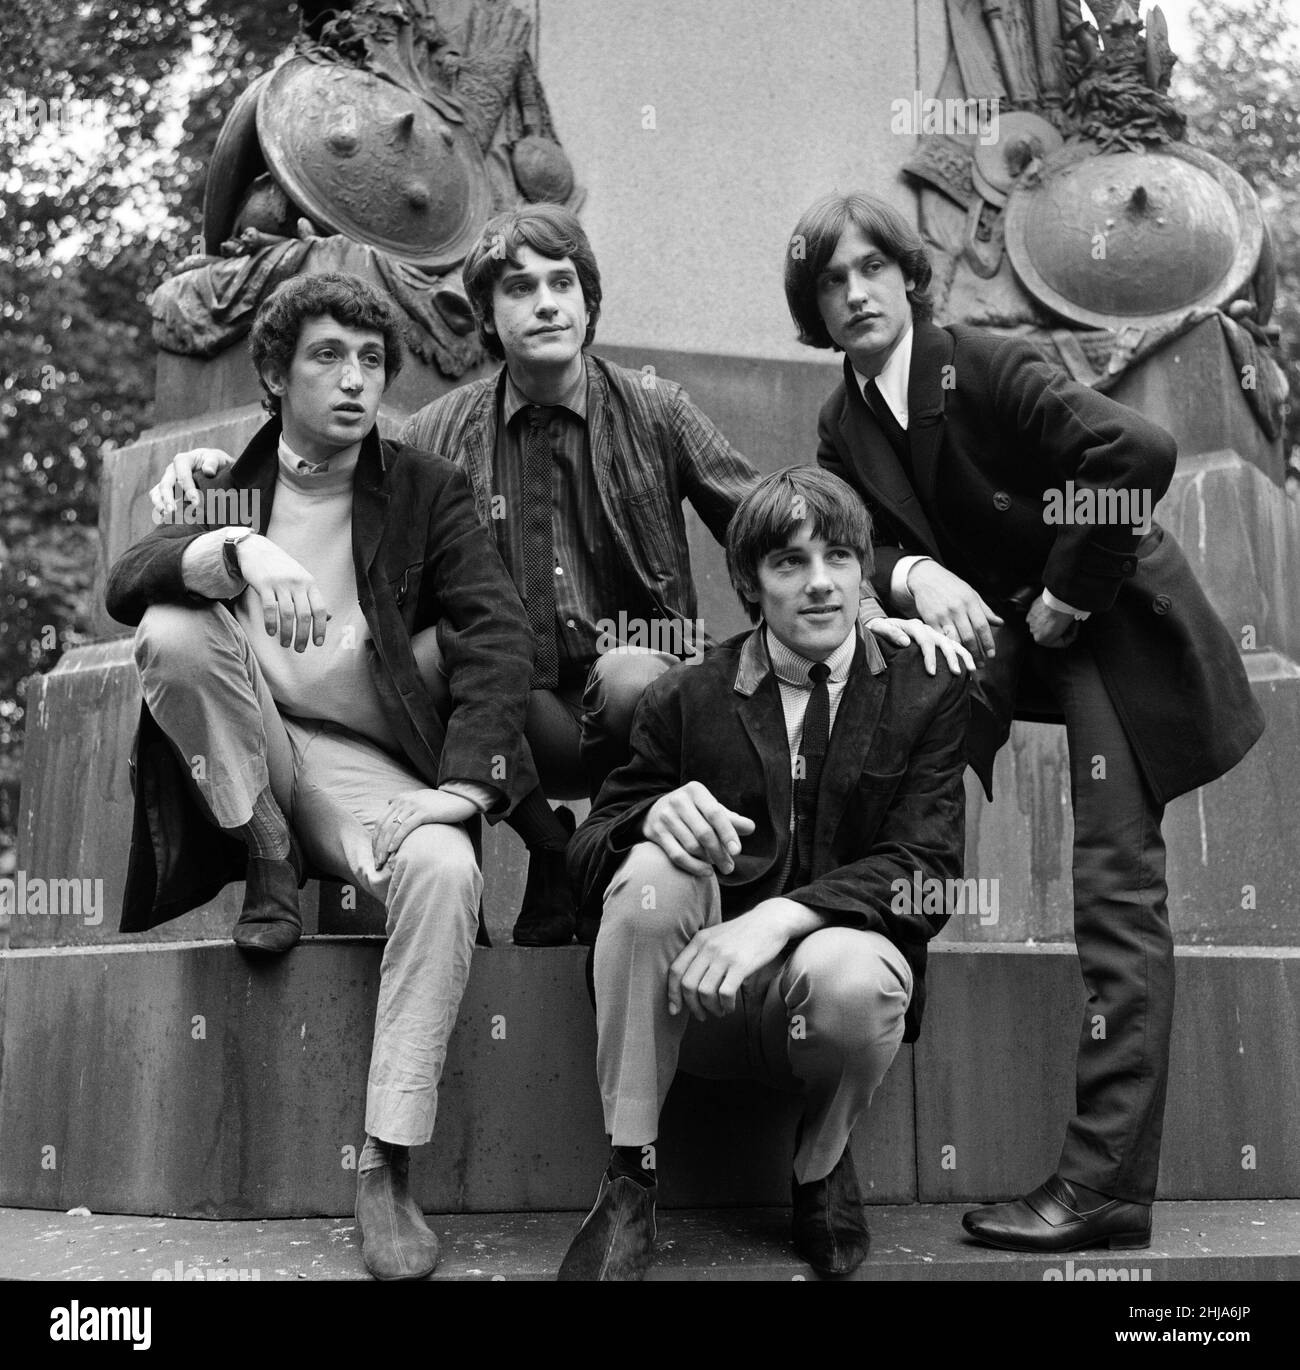 Die britische Rockgruppe The Kinks posiert auf Pferden in den Gärten gegenüber dem Flaghouse in Charing Cross, London, wo sie Proben. Von links nach rechts: Pete Quaife, Ray Davies, Mick Avory (unten) und Dave Davies. 7th. September 1964. Stockfoto